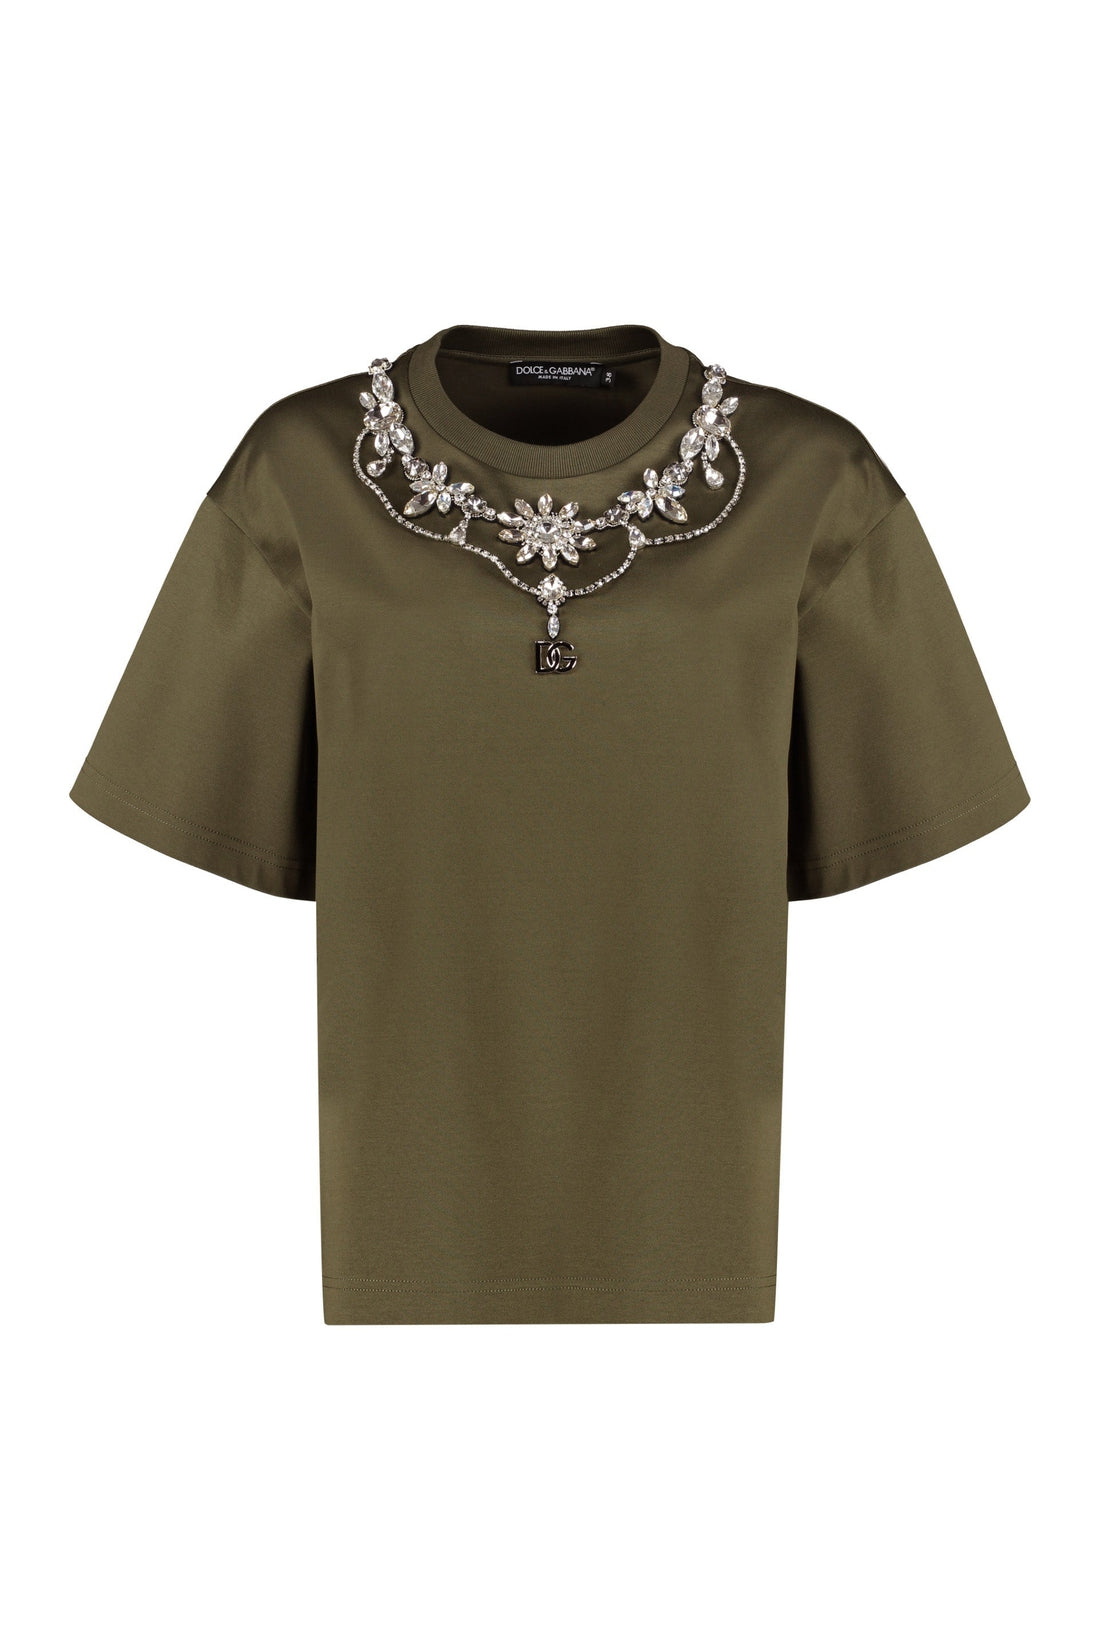 Dolce & Gabbana-OUTLET-SALE-Crewneck t-shirt with decoration-ARCHIVIST